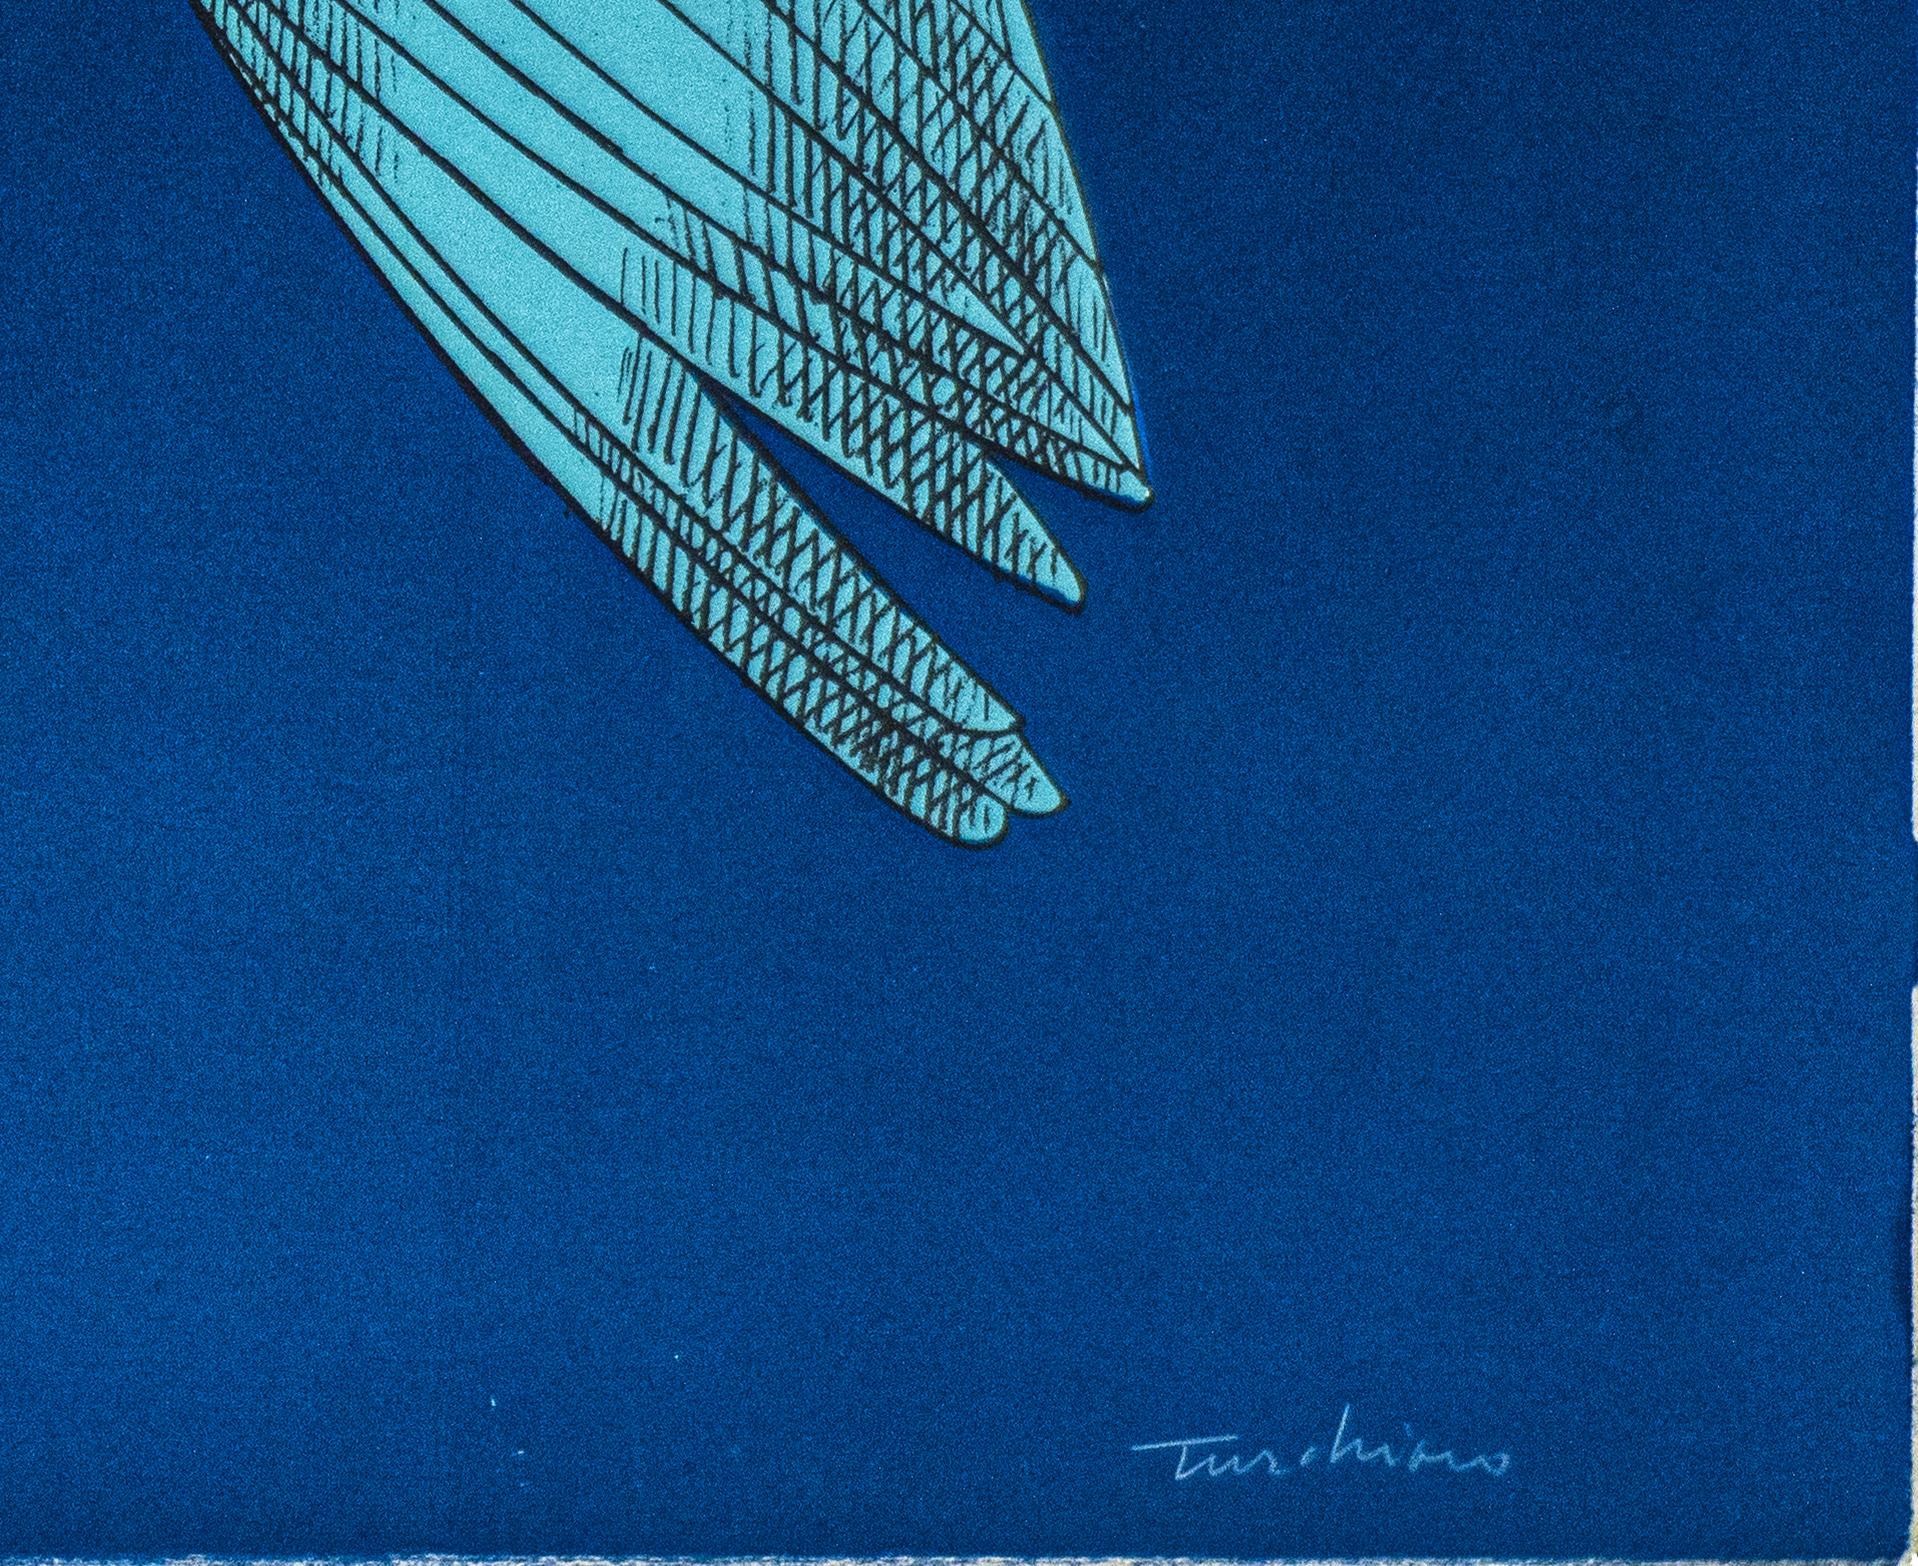 The Mechanical Bird - Original Lithograph by Aldo Turchiaro - 1980 1